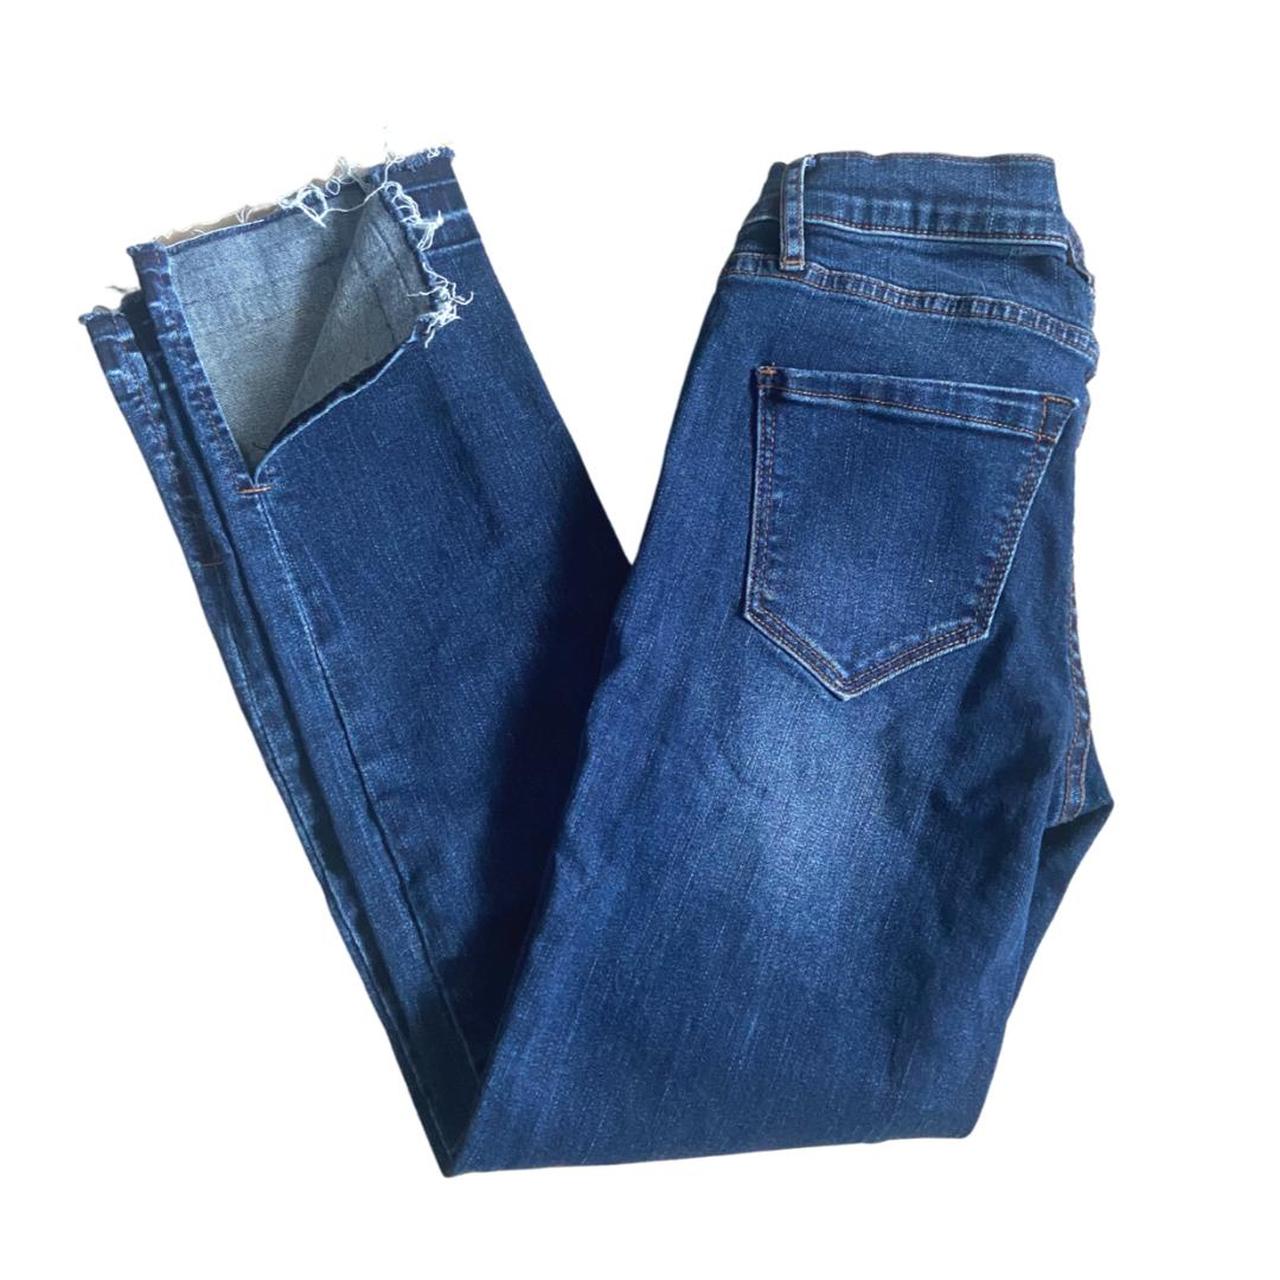 Nicole Miller Women's Blue Jeans